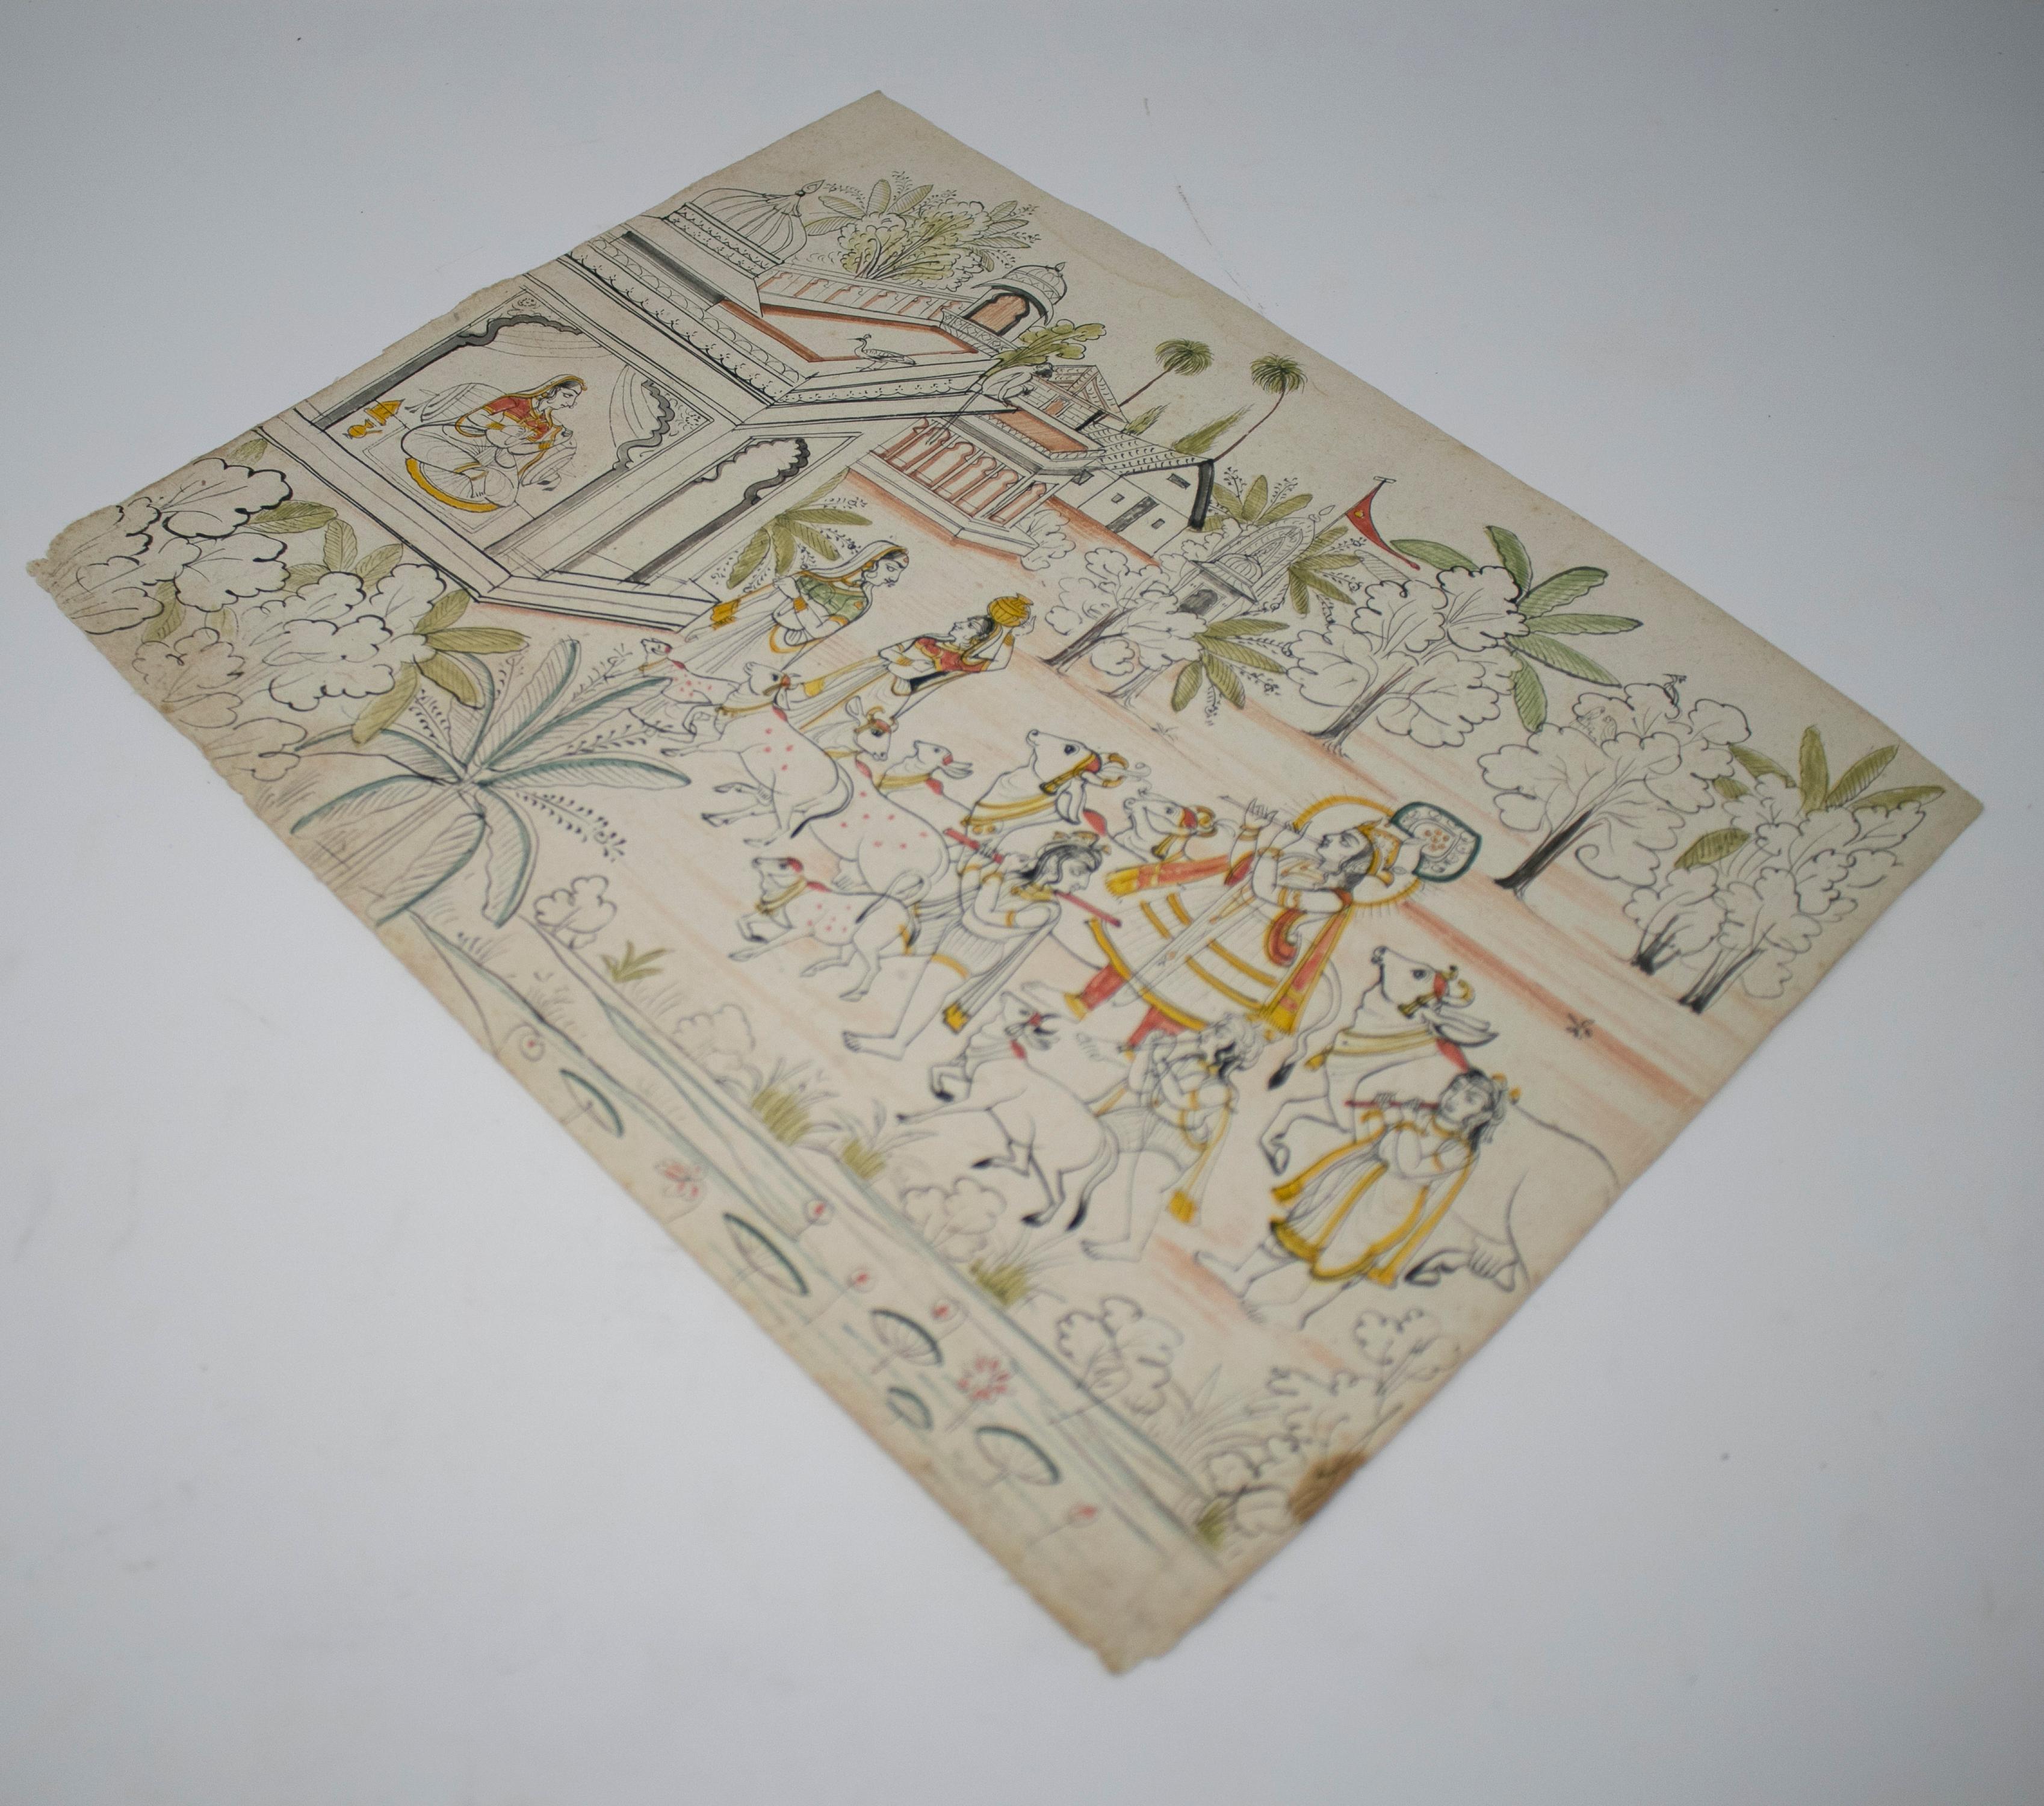 paire de dessins indiens des années 1970 en papier représentant des scènes de chasse et de musique. Ils font partie d'une collection privée.

Les dimensions correspondent à chaque dessin.